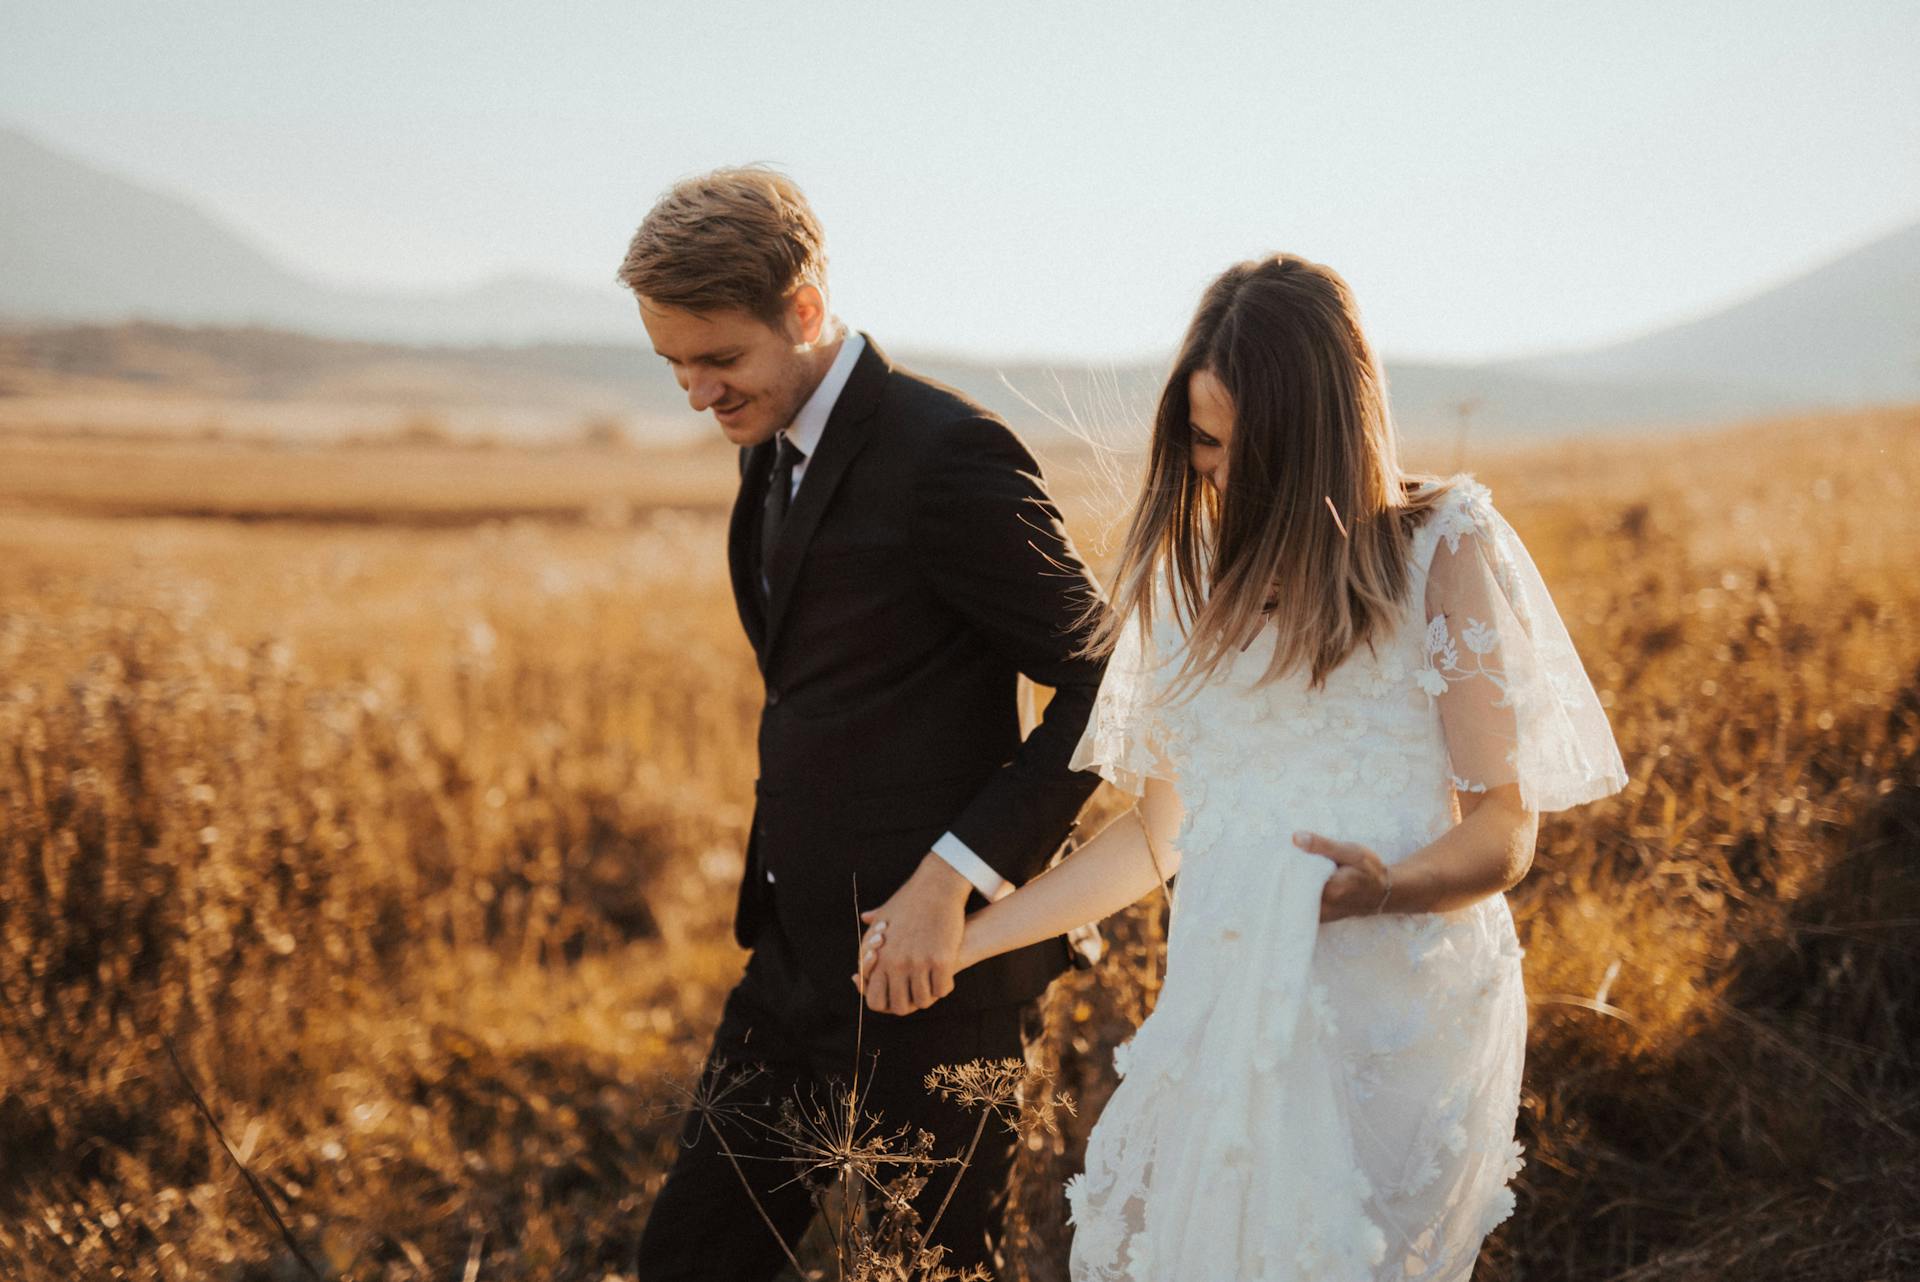 Ein Ehepaar auf einem Feld | Quelle: Pexels